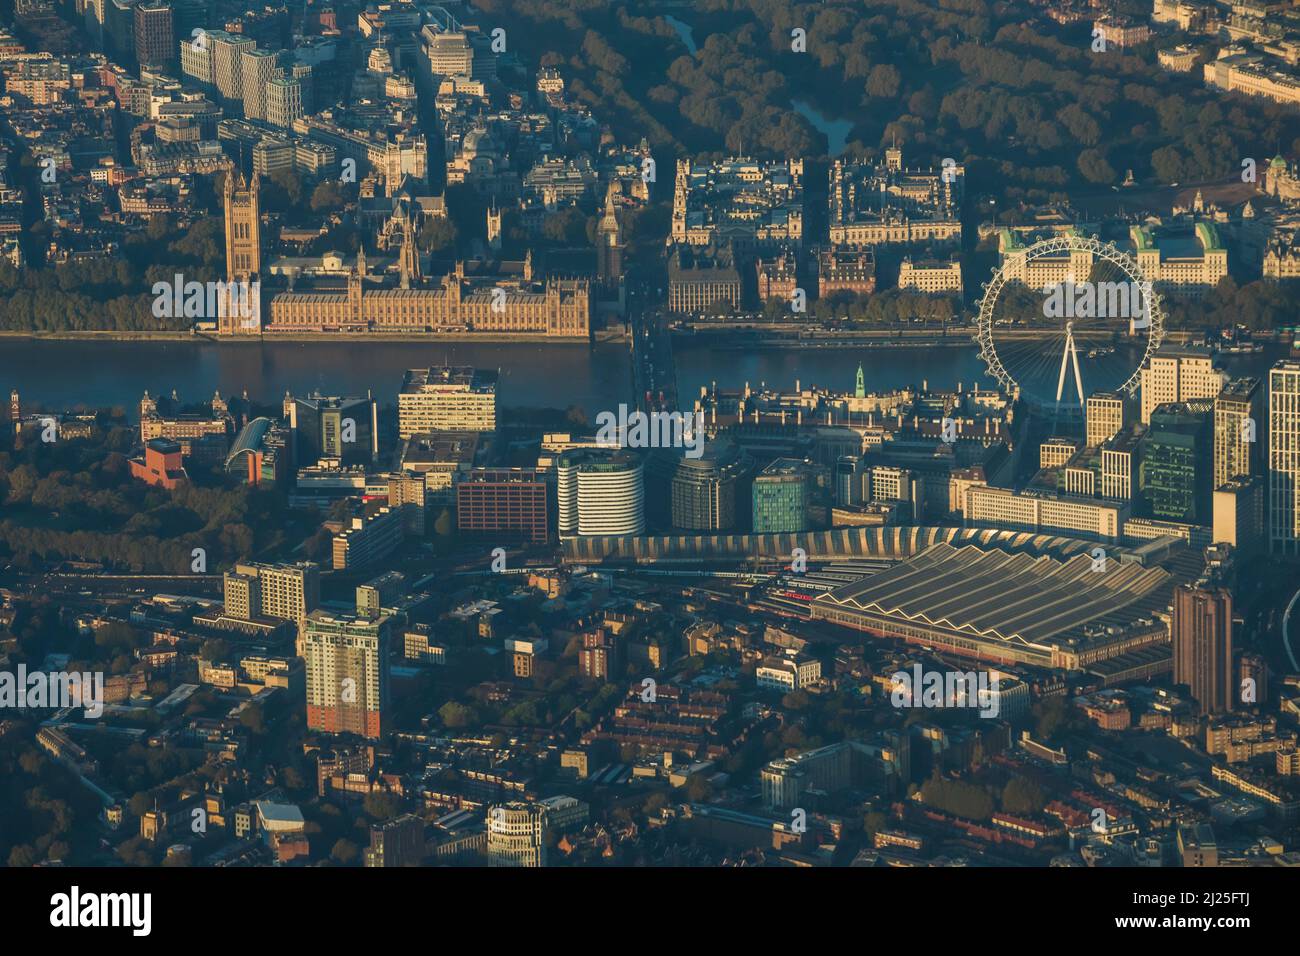 Vue aérienne de la Tamise à Westminster à l'aube Banque D'Images